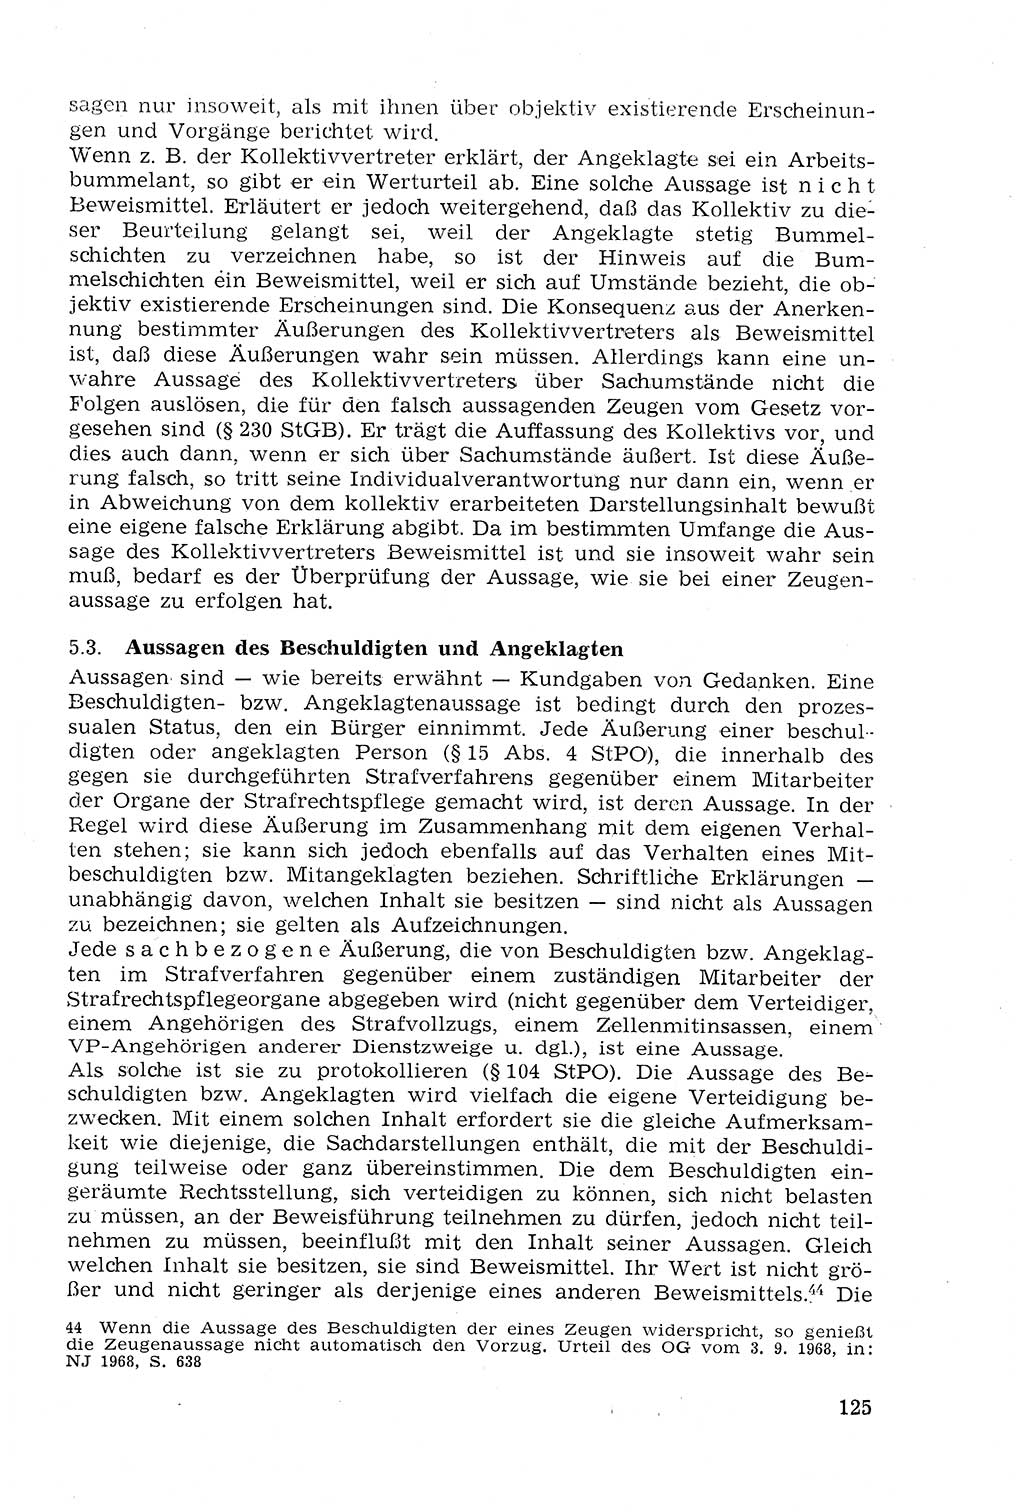 Strafprozeßrecht der DDR (Deutsche Demokratische Republik), Lehrmaterial 1969, Seite 125 (Strafprozeßr. DDR Lehrmat. 1969, S. 125)